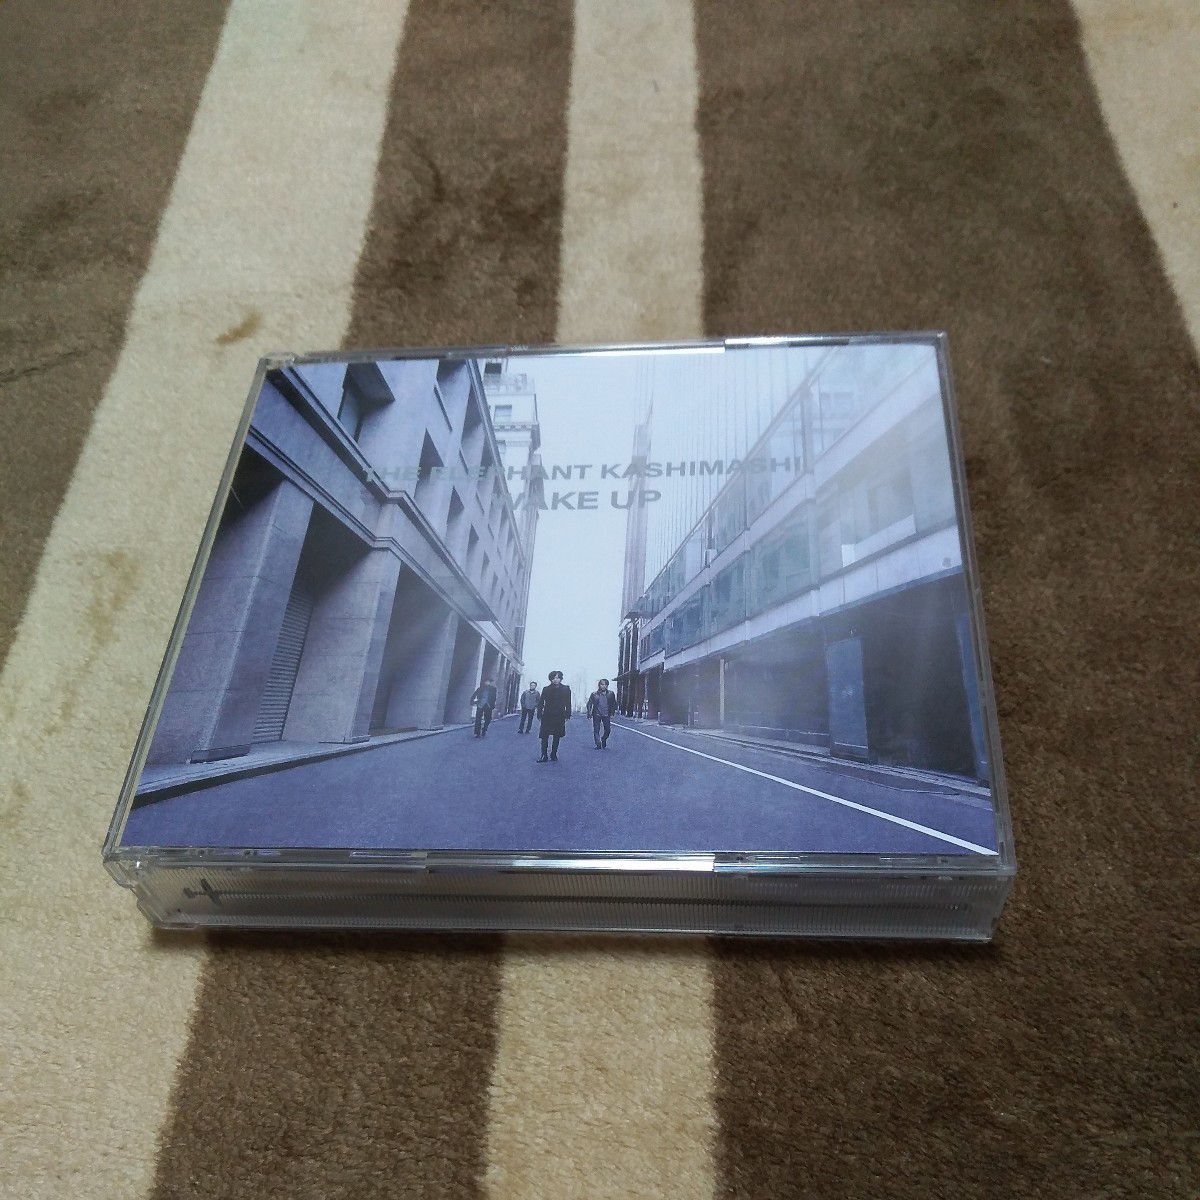 エレファントカシマシ WAKE UP 初回限定盤 2CD+DVD アルバム エレカシ 宮本浩次_画像1